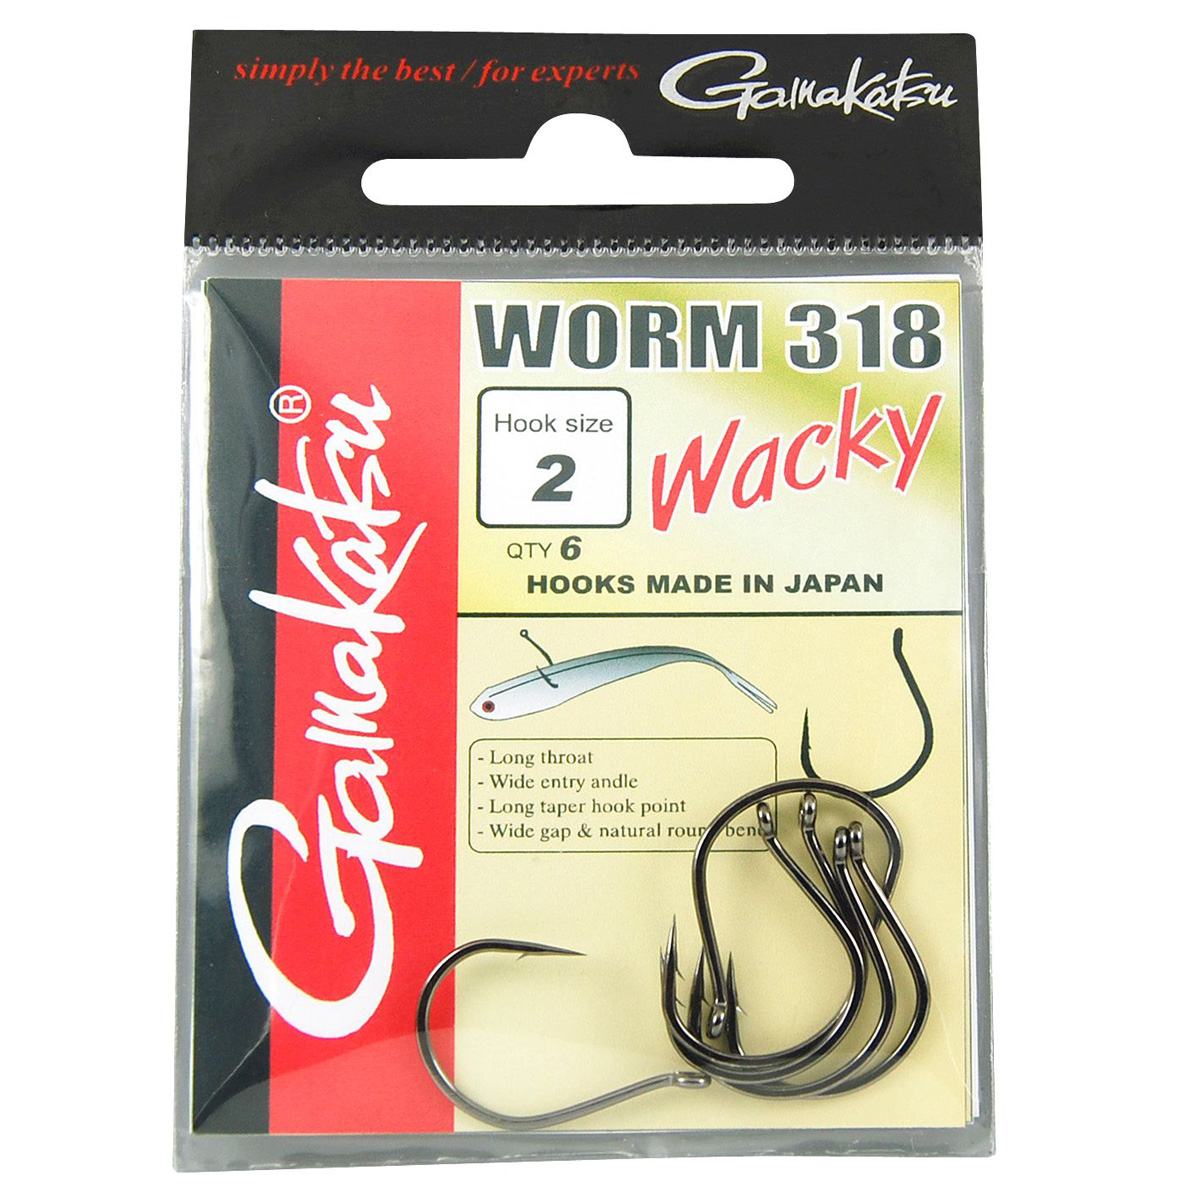 Gamakatsu® Worm 318 Wacky